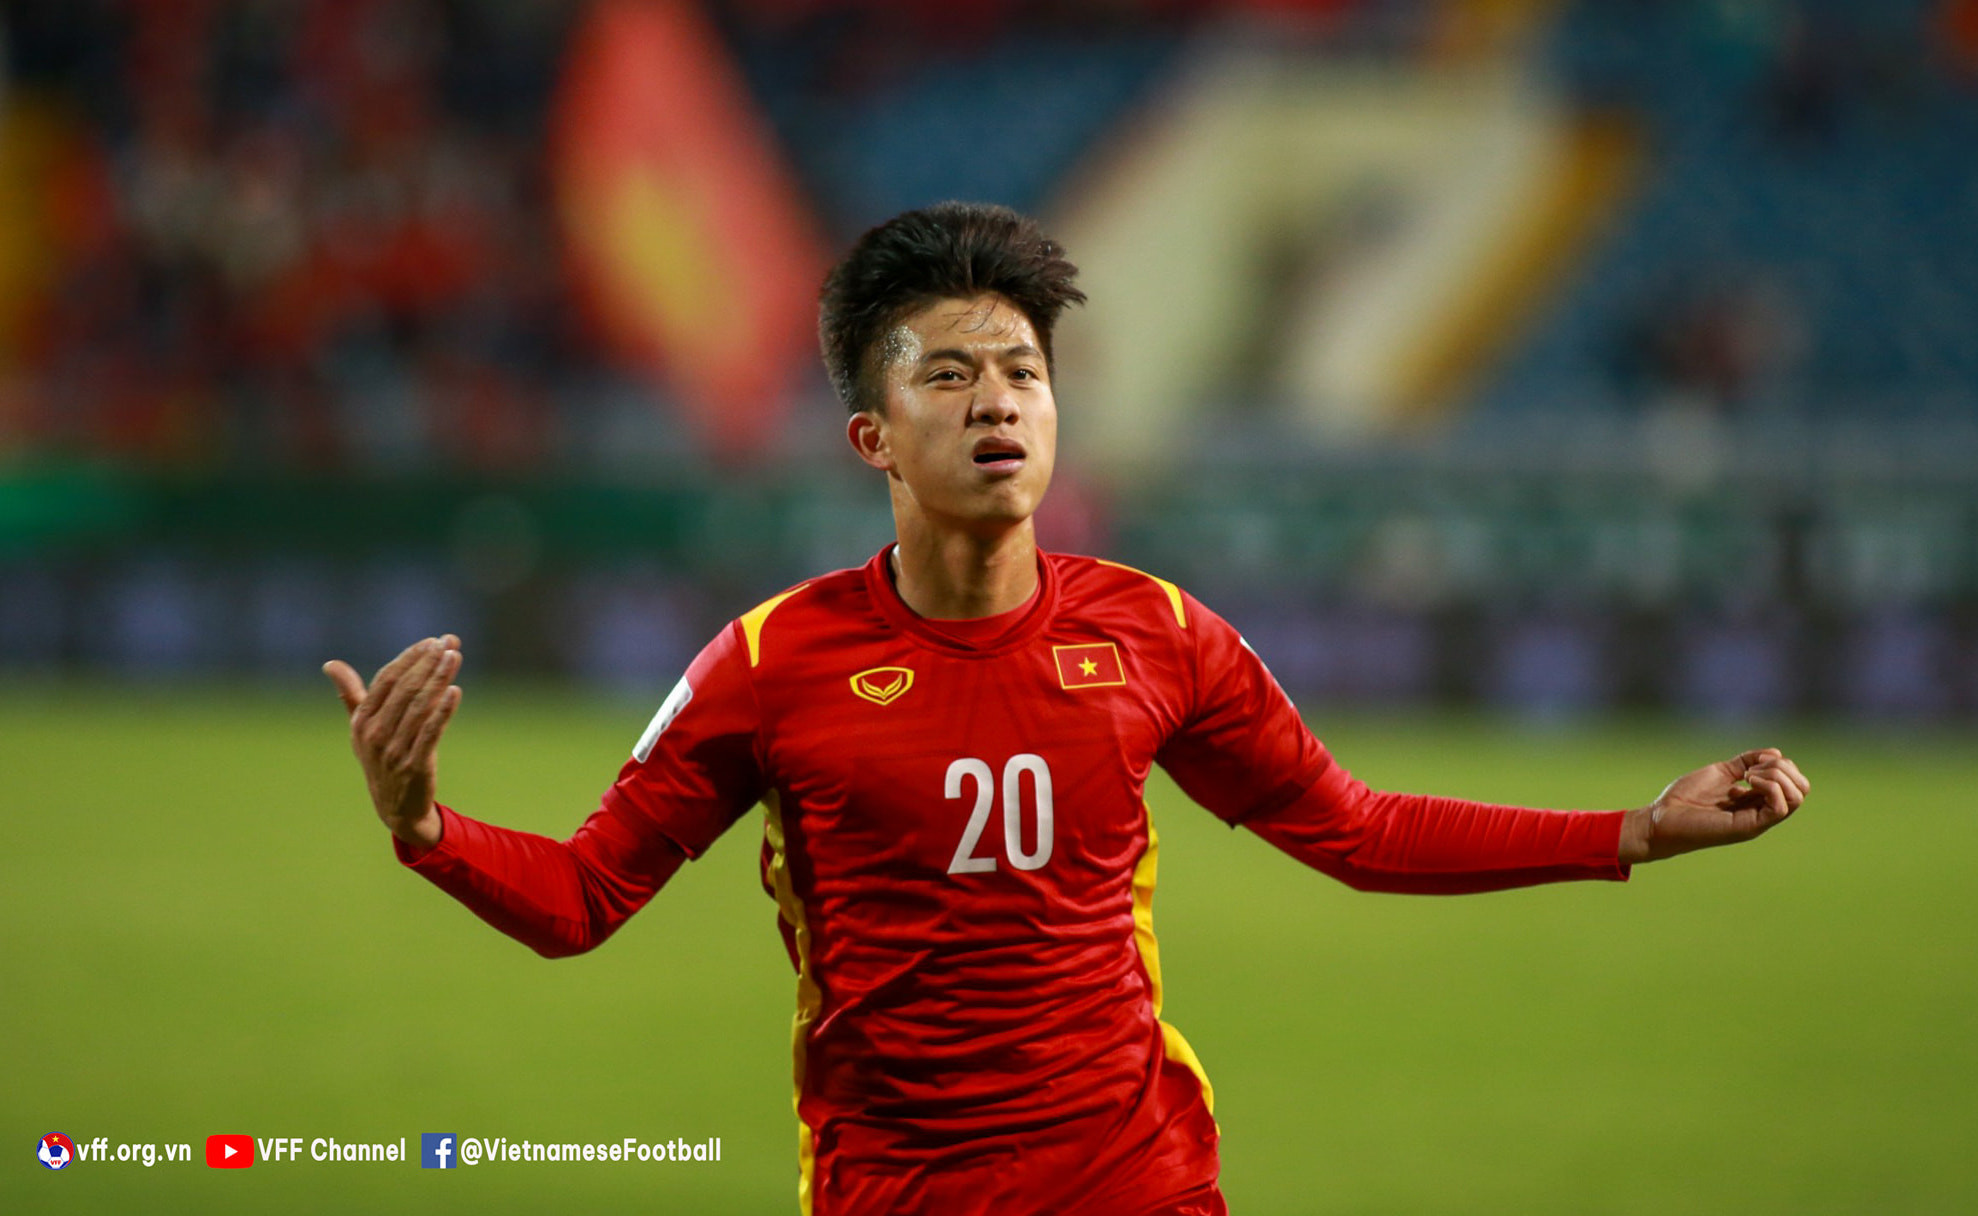 Phan Văn Đức buộc phải chia tay ĐT Việt Nam trước thềm 2 trận đấu với Oman cùng Nhật Bản. Ảnh: VFF